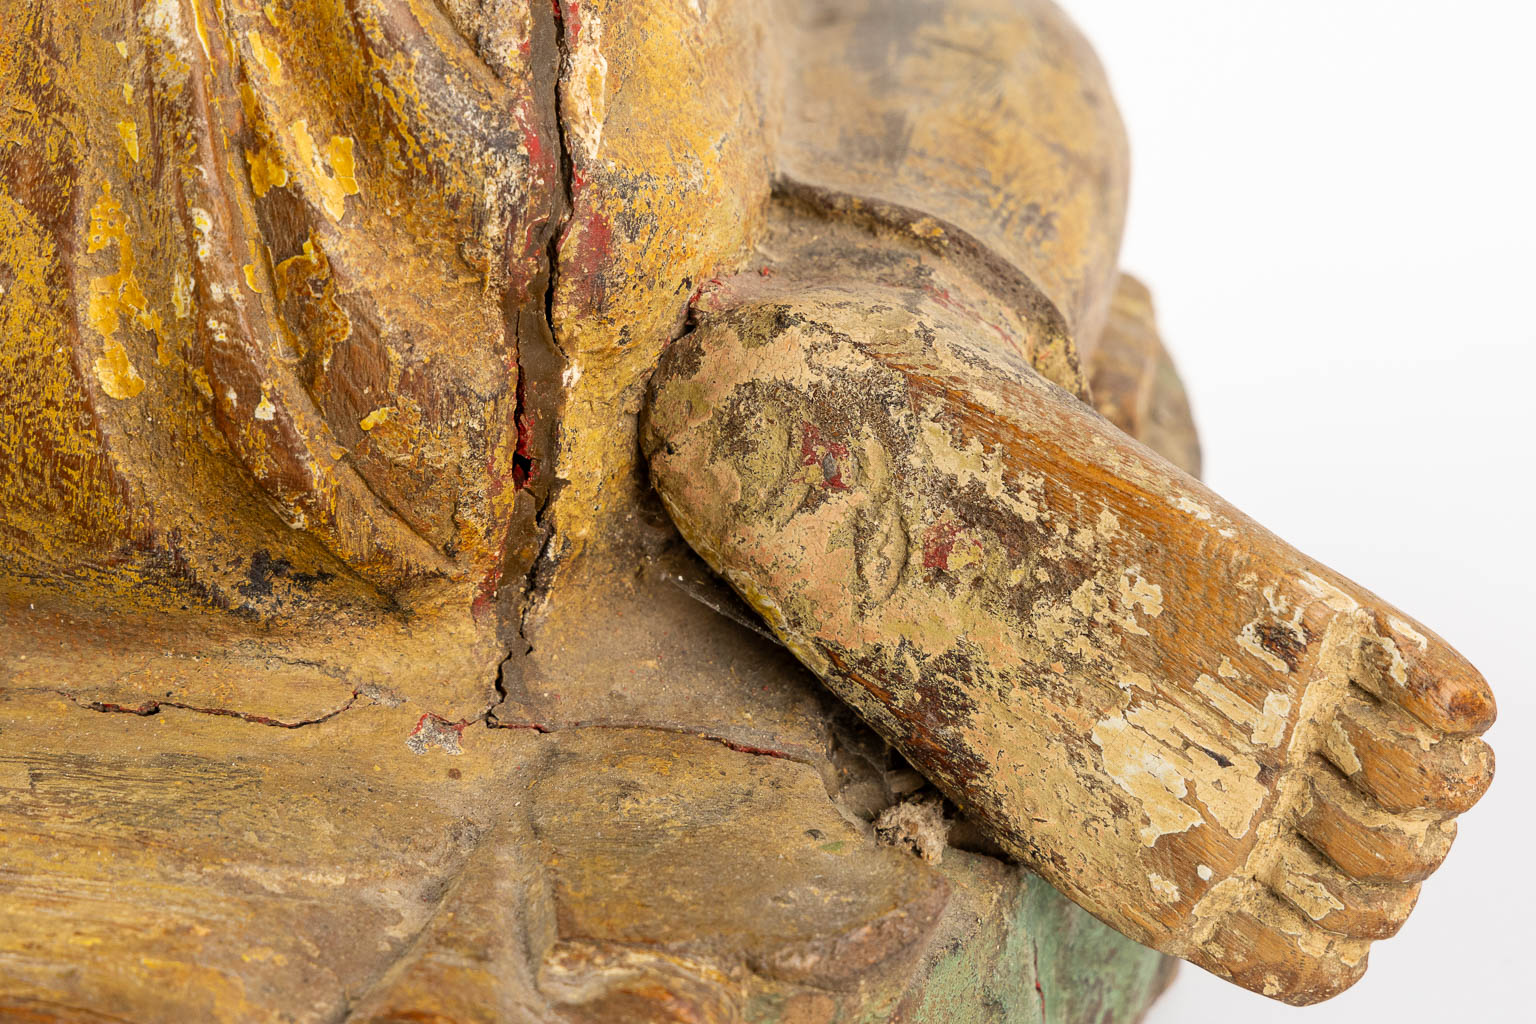 Een antieke houtsculptuur van een monnik, 18de/19de eeuw. (L:36 x W:30 x H:47 cm)